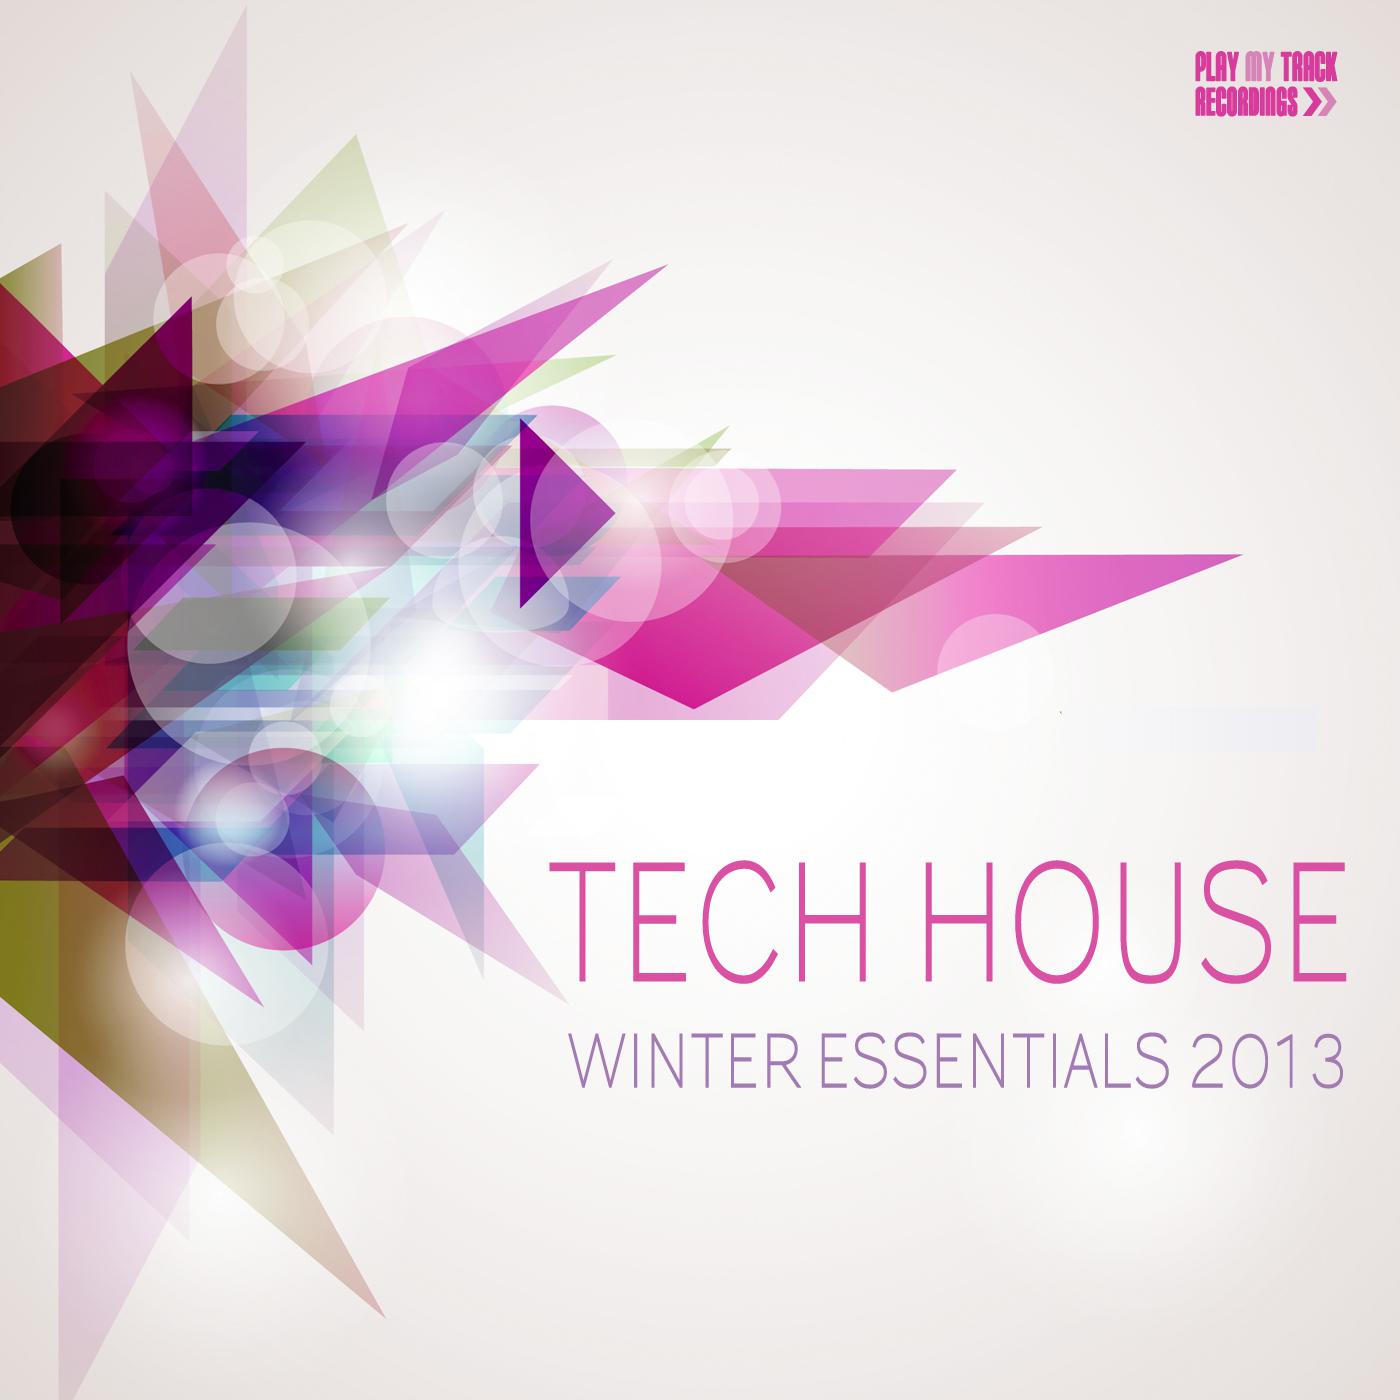 Tech House Winter Essentials 2013